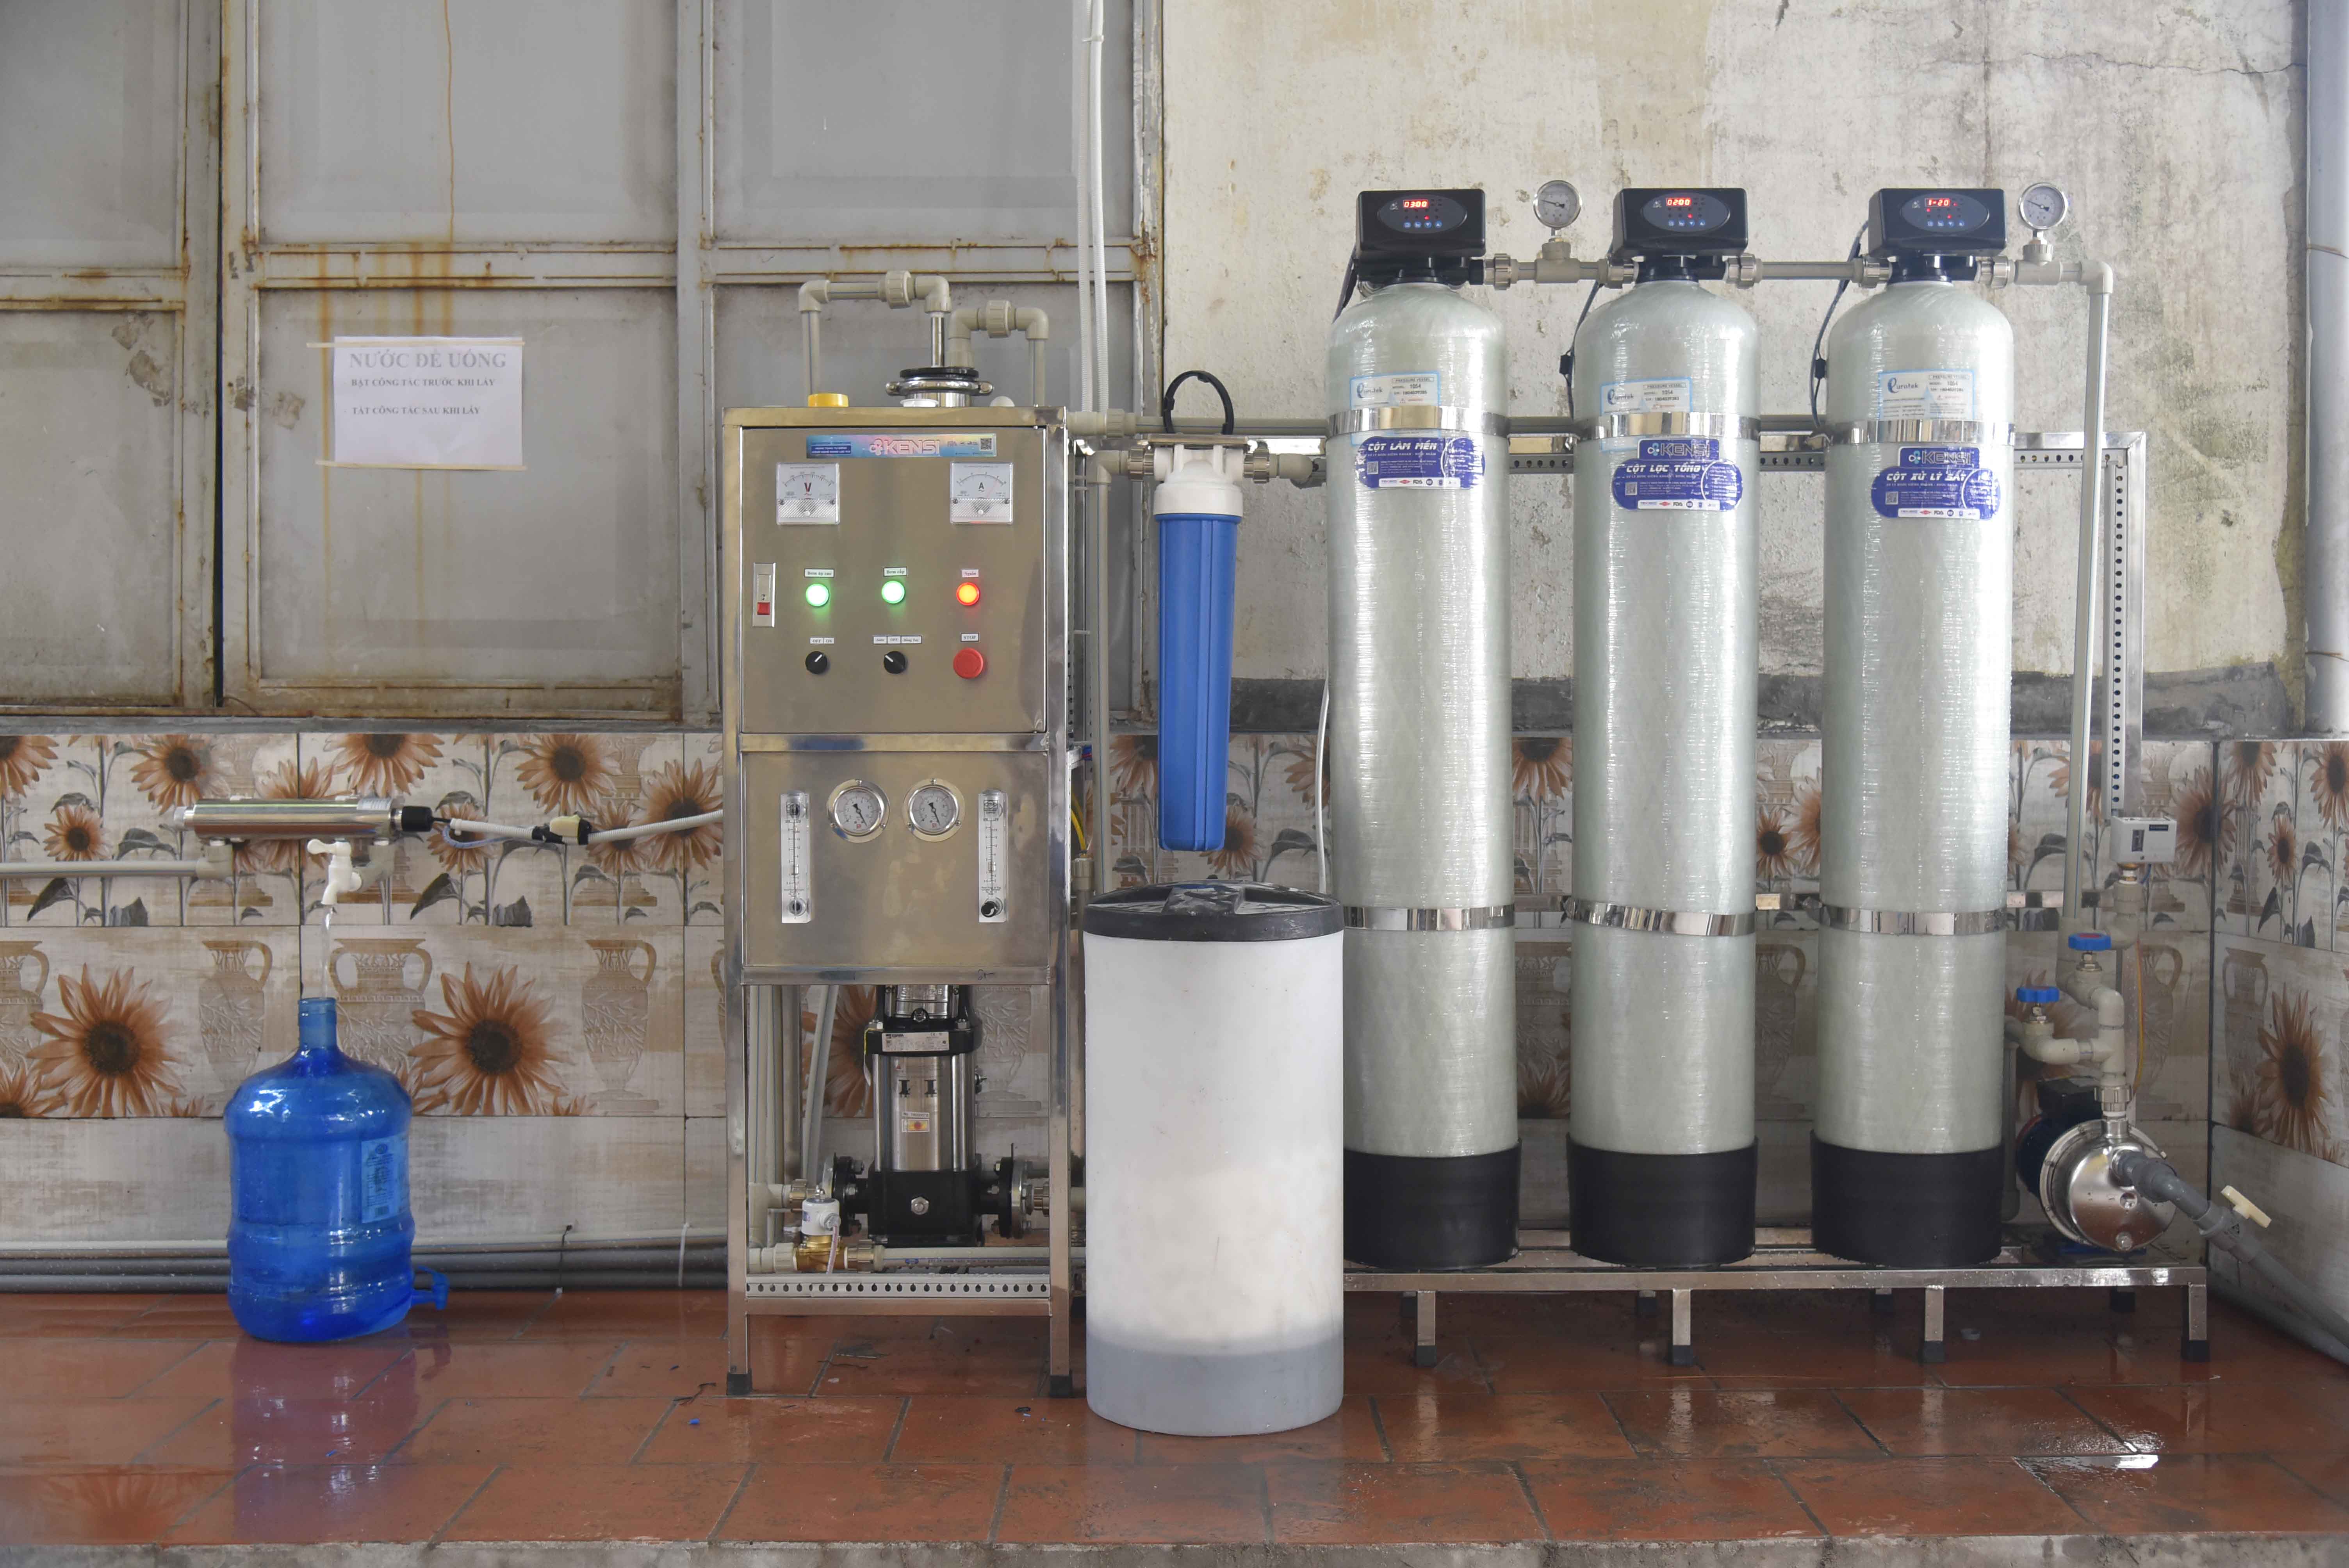 Hệ thống lọc nước tinh khiết được thi công lắp đặt bởi các kĩ thuật viên nhiều năm kinh nghiệm của Tekcom